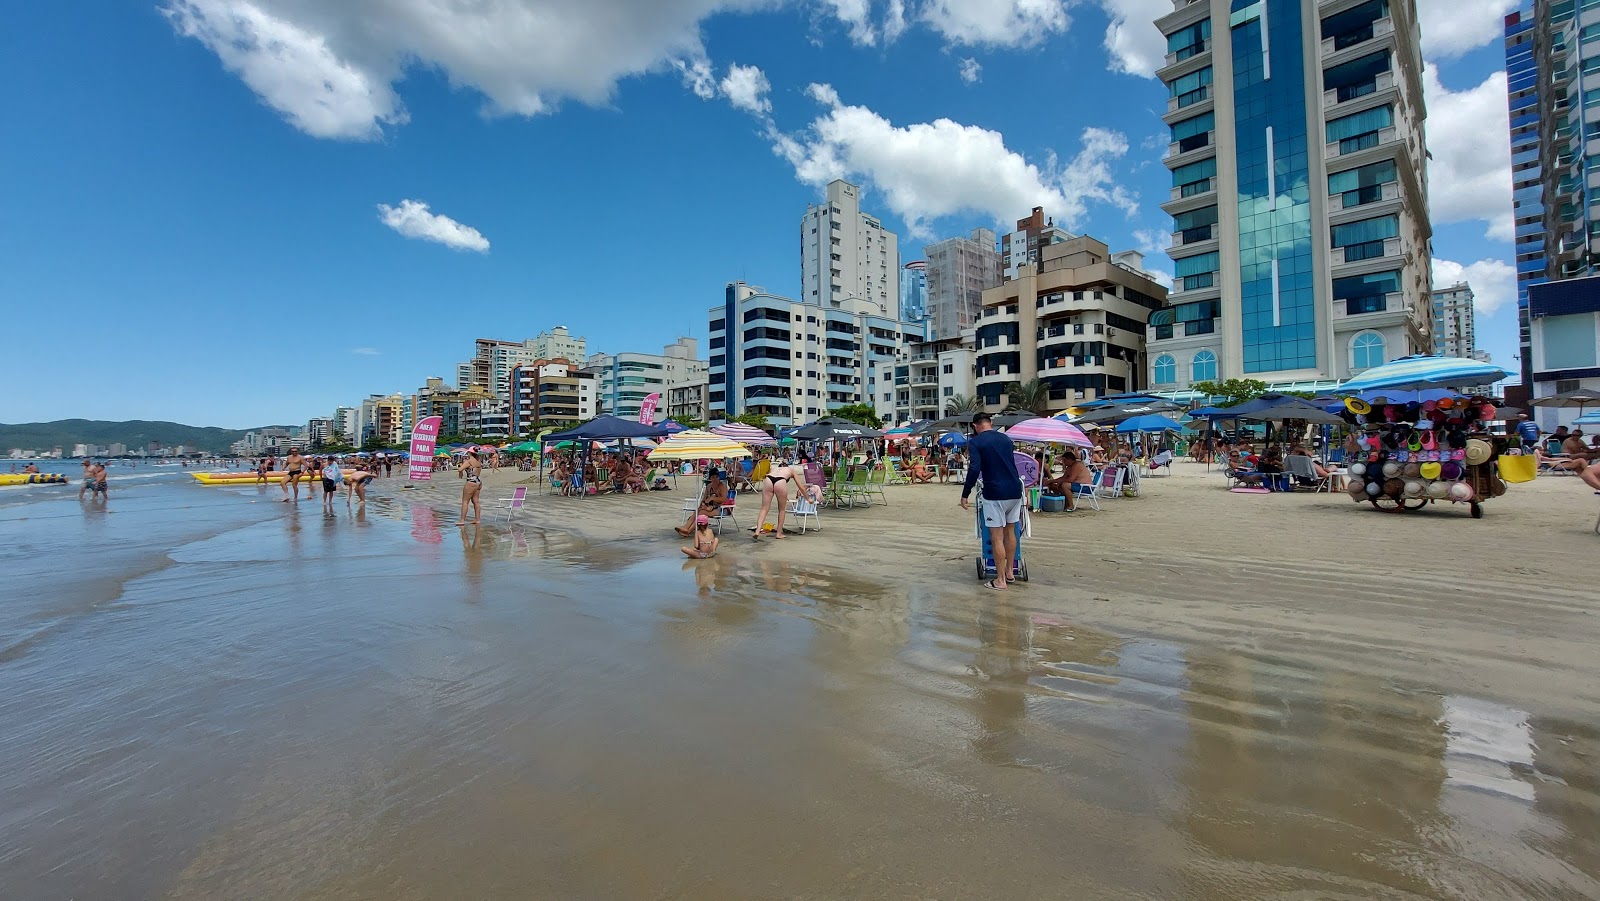 Foto af Praia de Itapema - populært sted blandt afslapningskendere